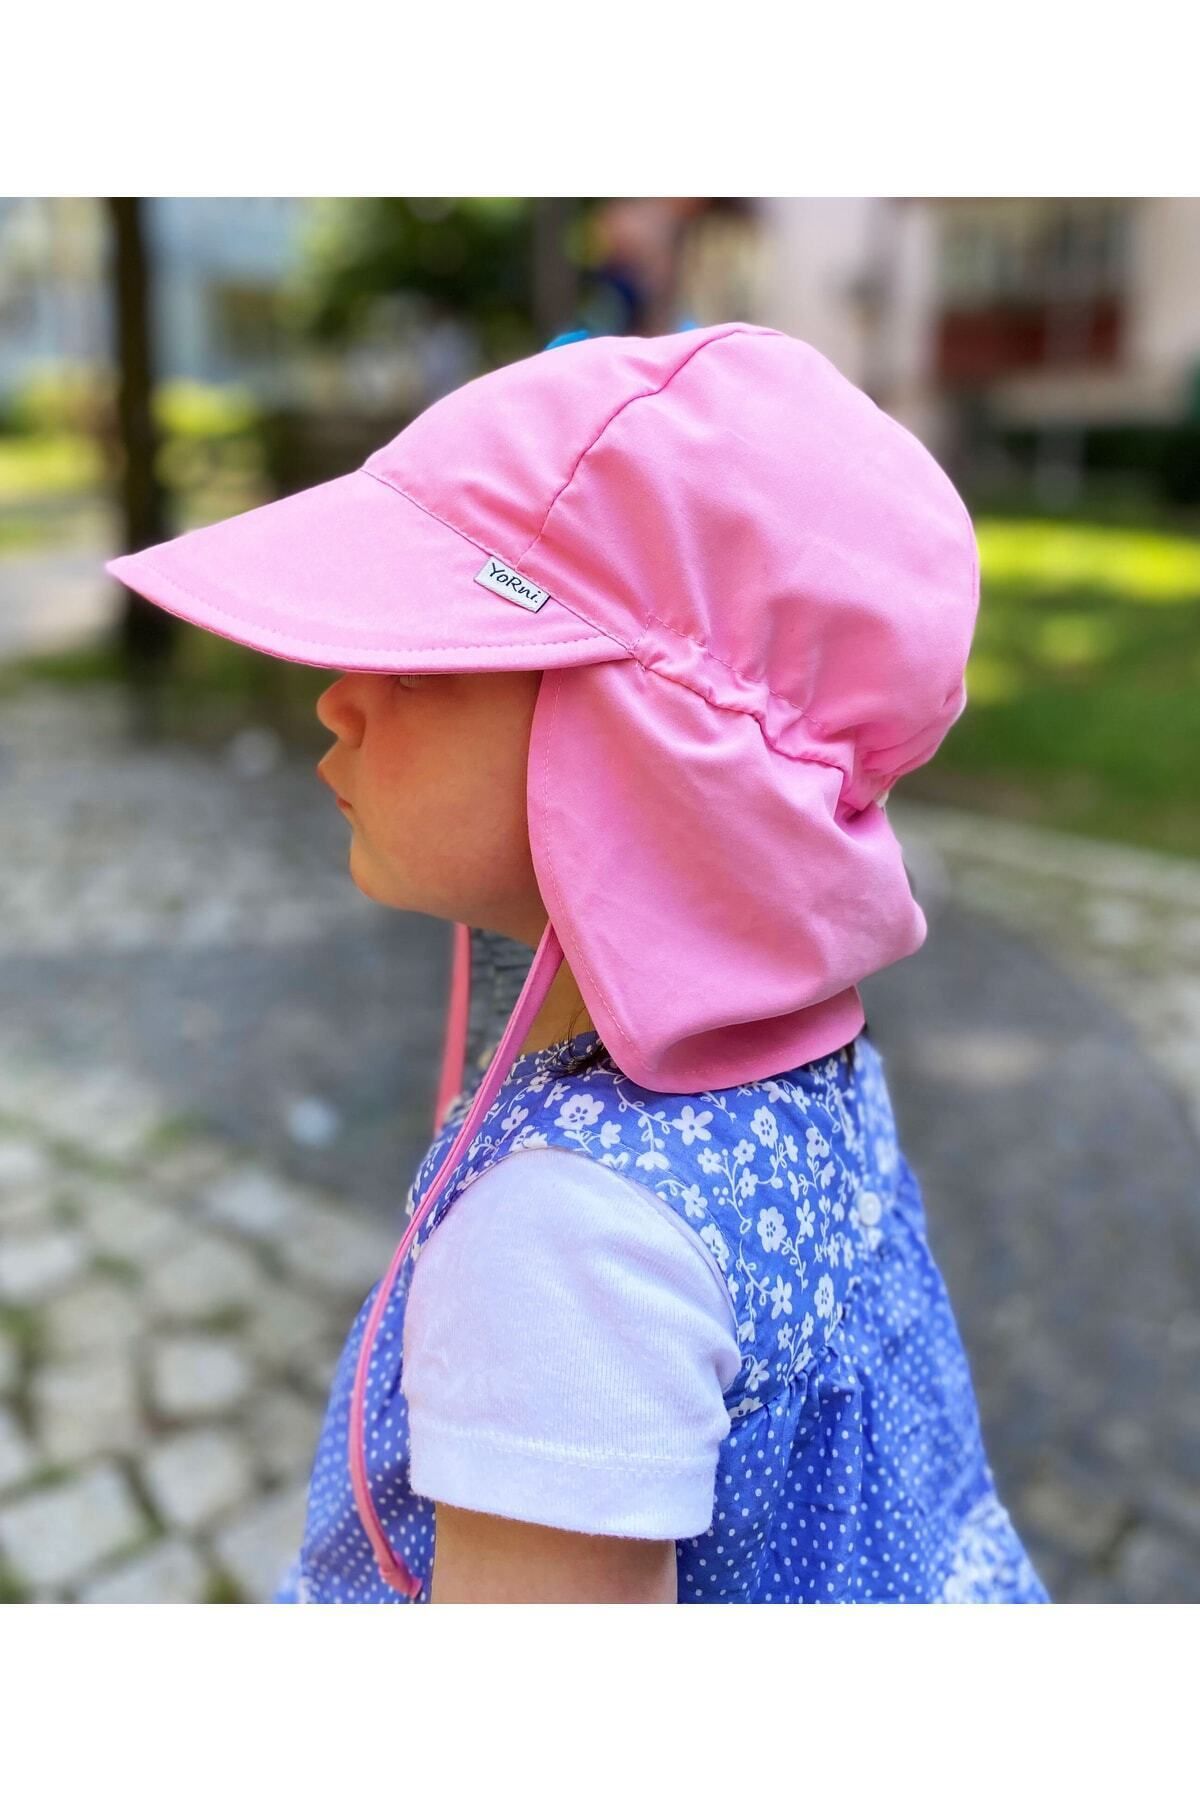 yorni Pembe Flap Lejyoner, Ense Korumalı, Boyundan Bağlamalı, Lastikli Ayar Tokalı Çocuk Bebek Güneş Şapka